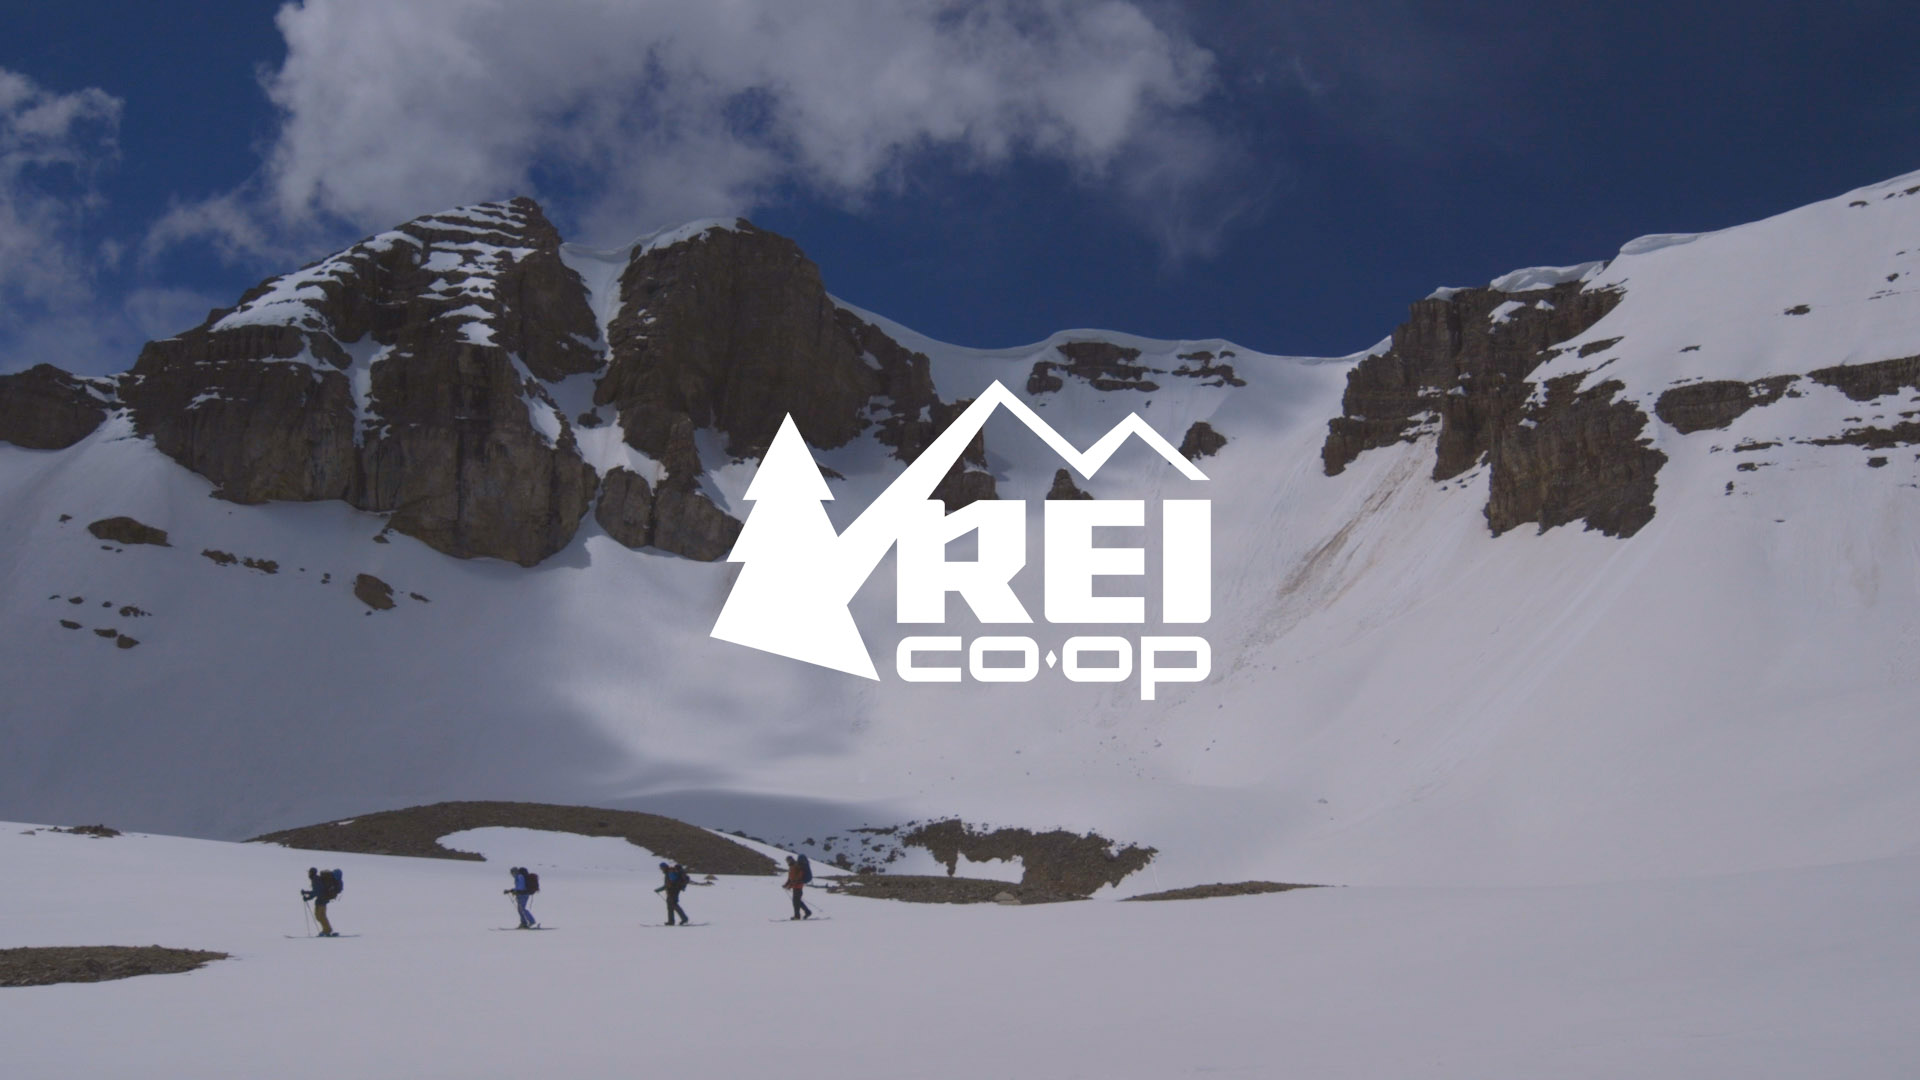 REI logo on top of snow mountain scene